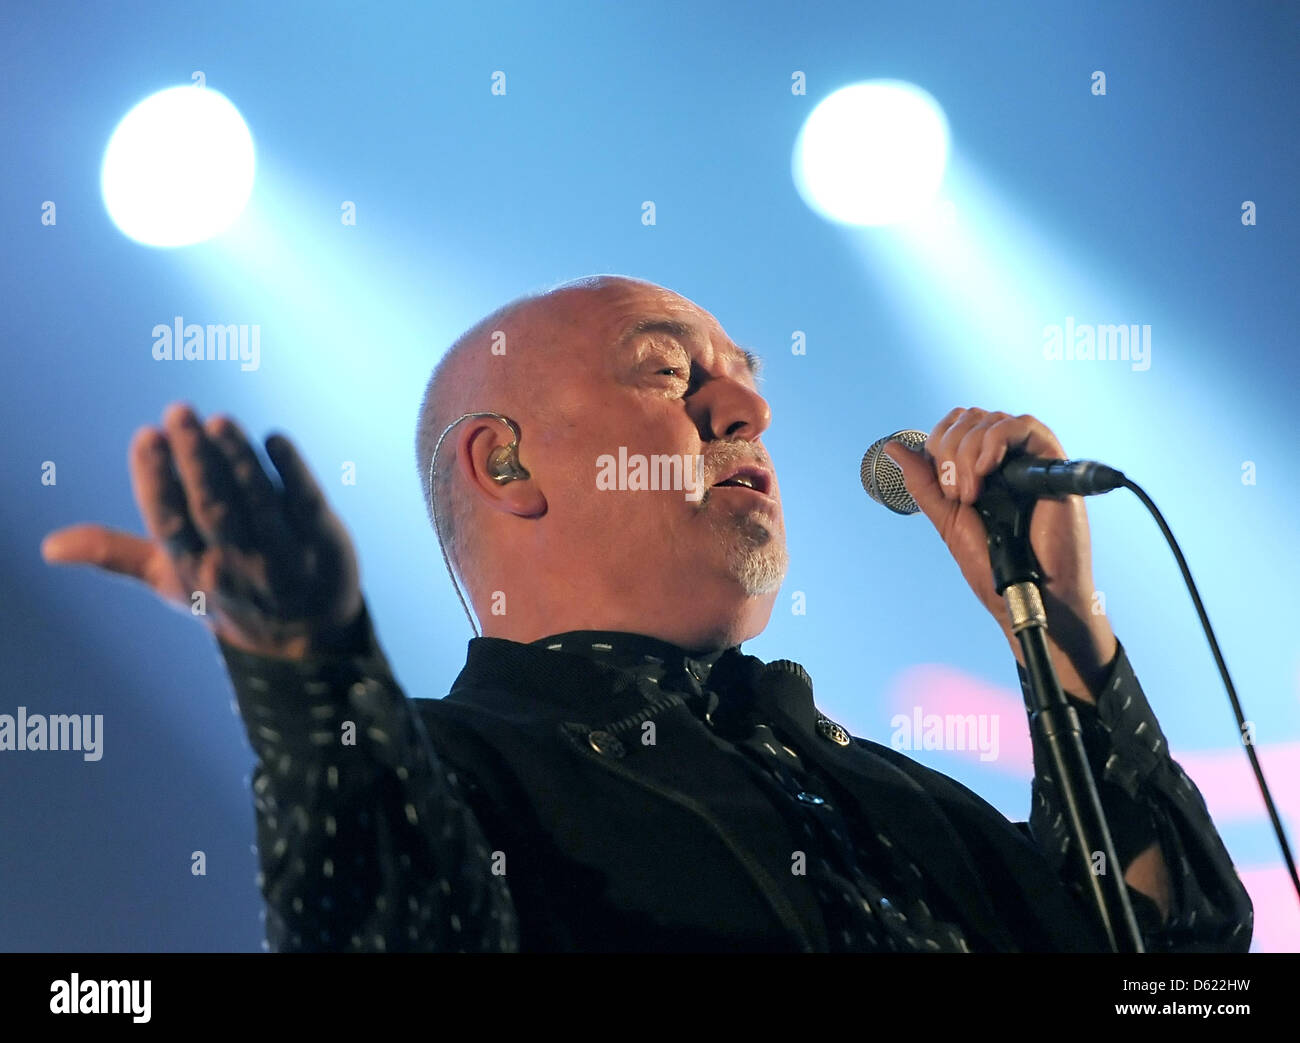 Cantante britannico Peter Gabriel si esibisce dal vivo sul palco con la " nuova Orchestra di sangue' alla O2 World di Berlino, Germania, 09 maggio 2012. Foto: Britta Pedersen Foto Stock